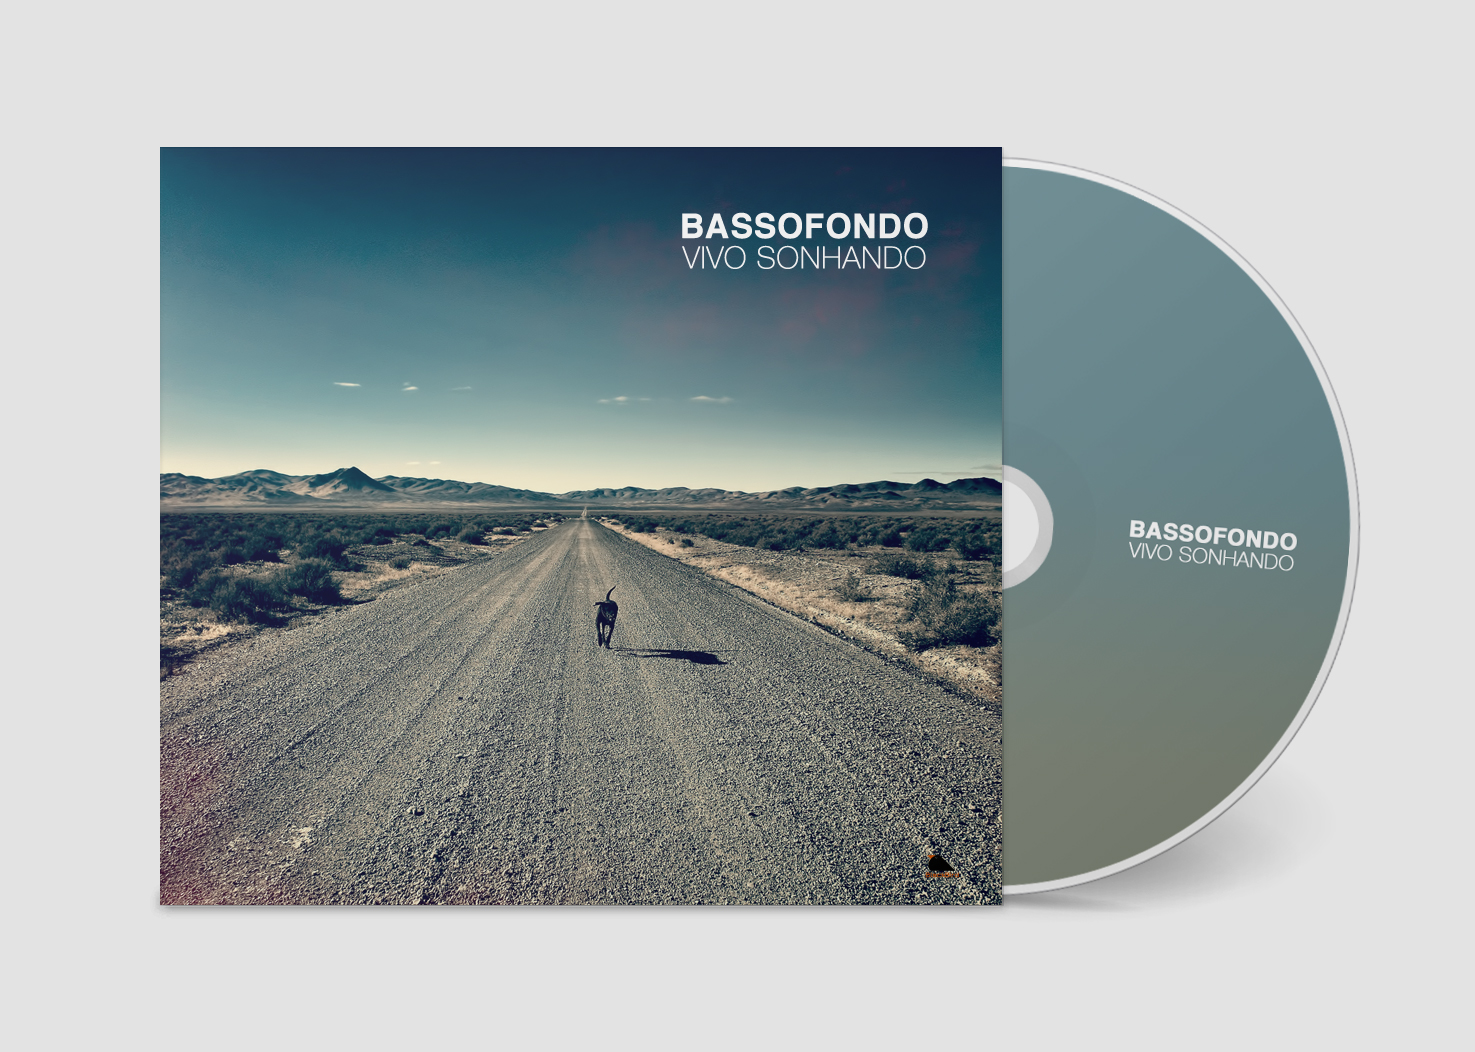 Cover of CD Bassofondo Vivo Sonhando